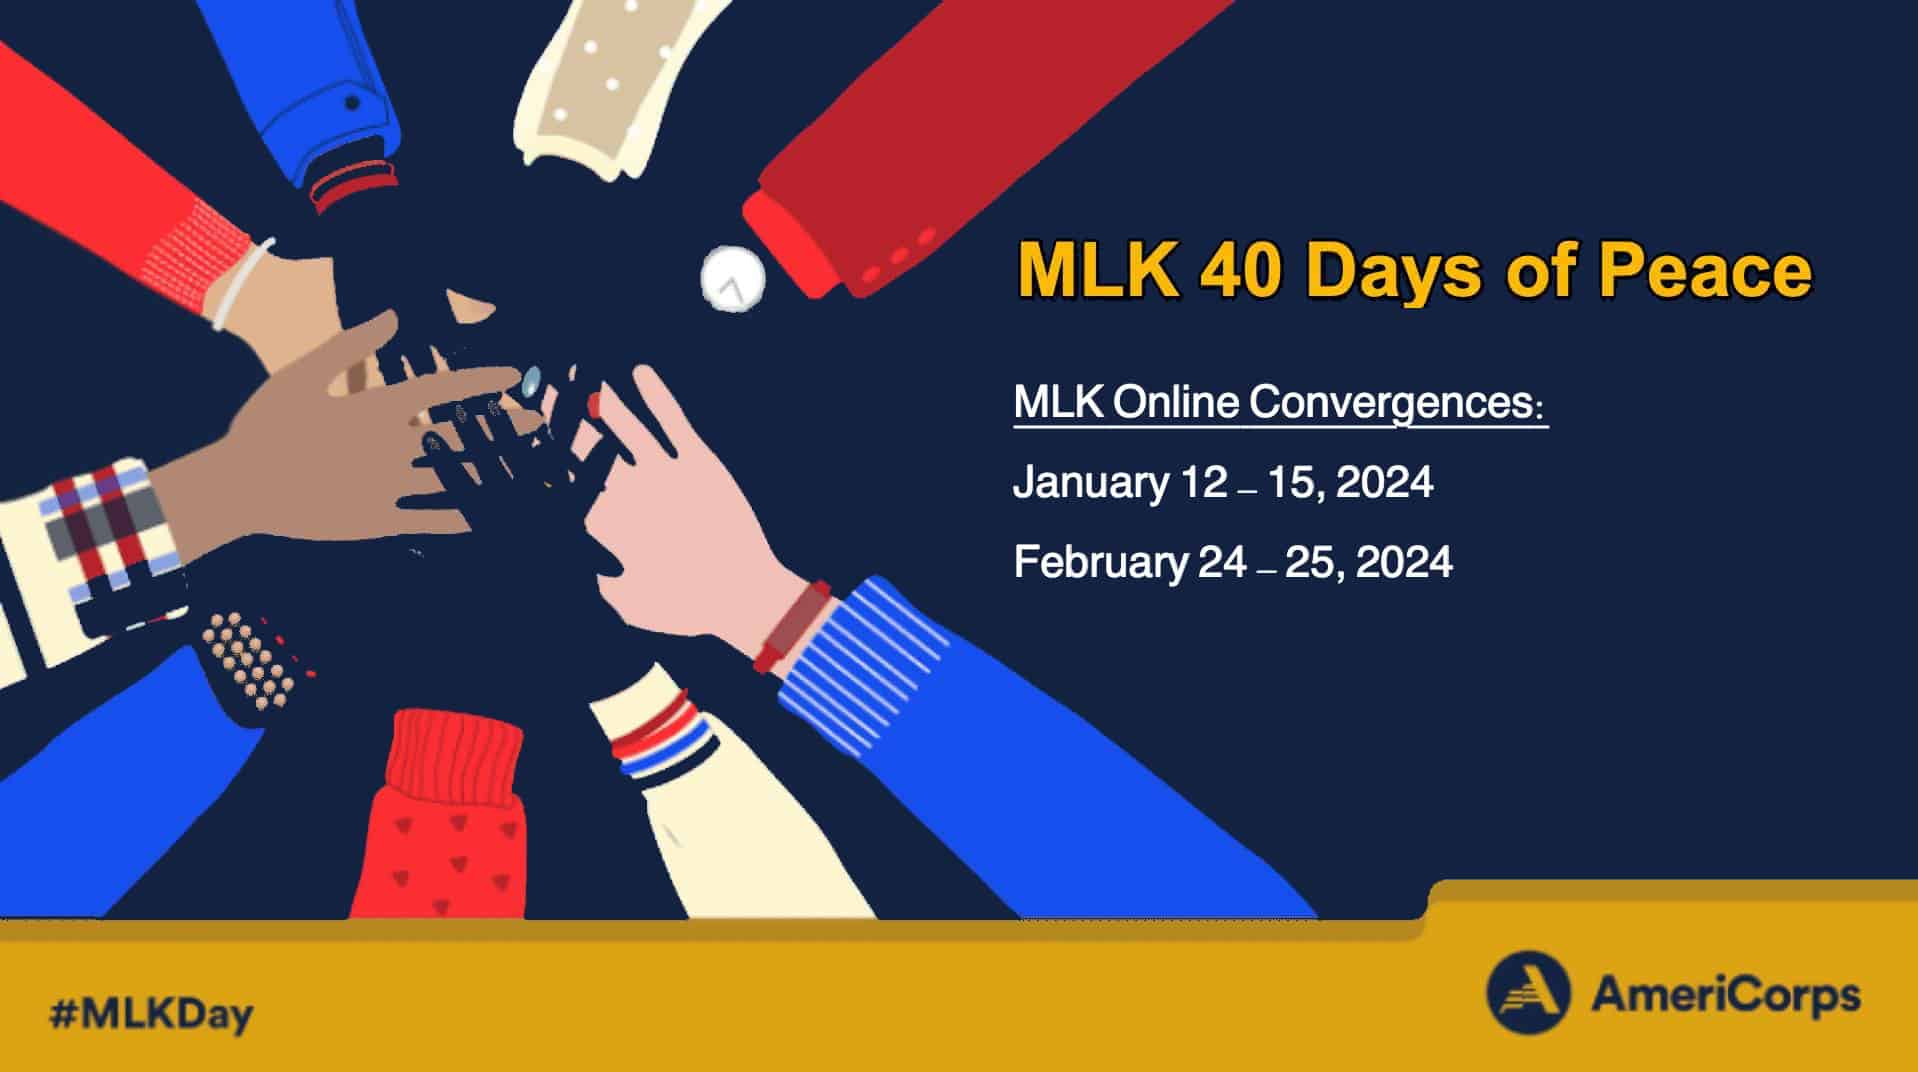 MLK Beloved Community Convergence 2023 banner image.